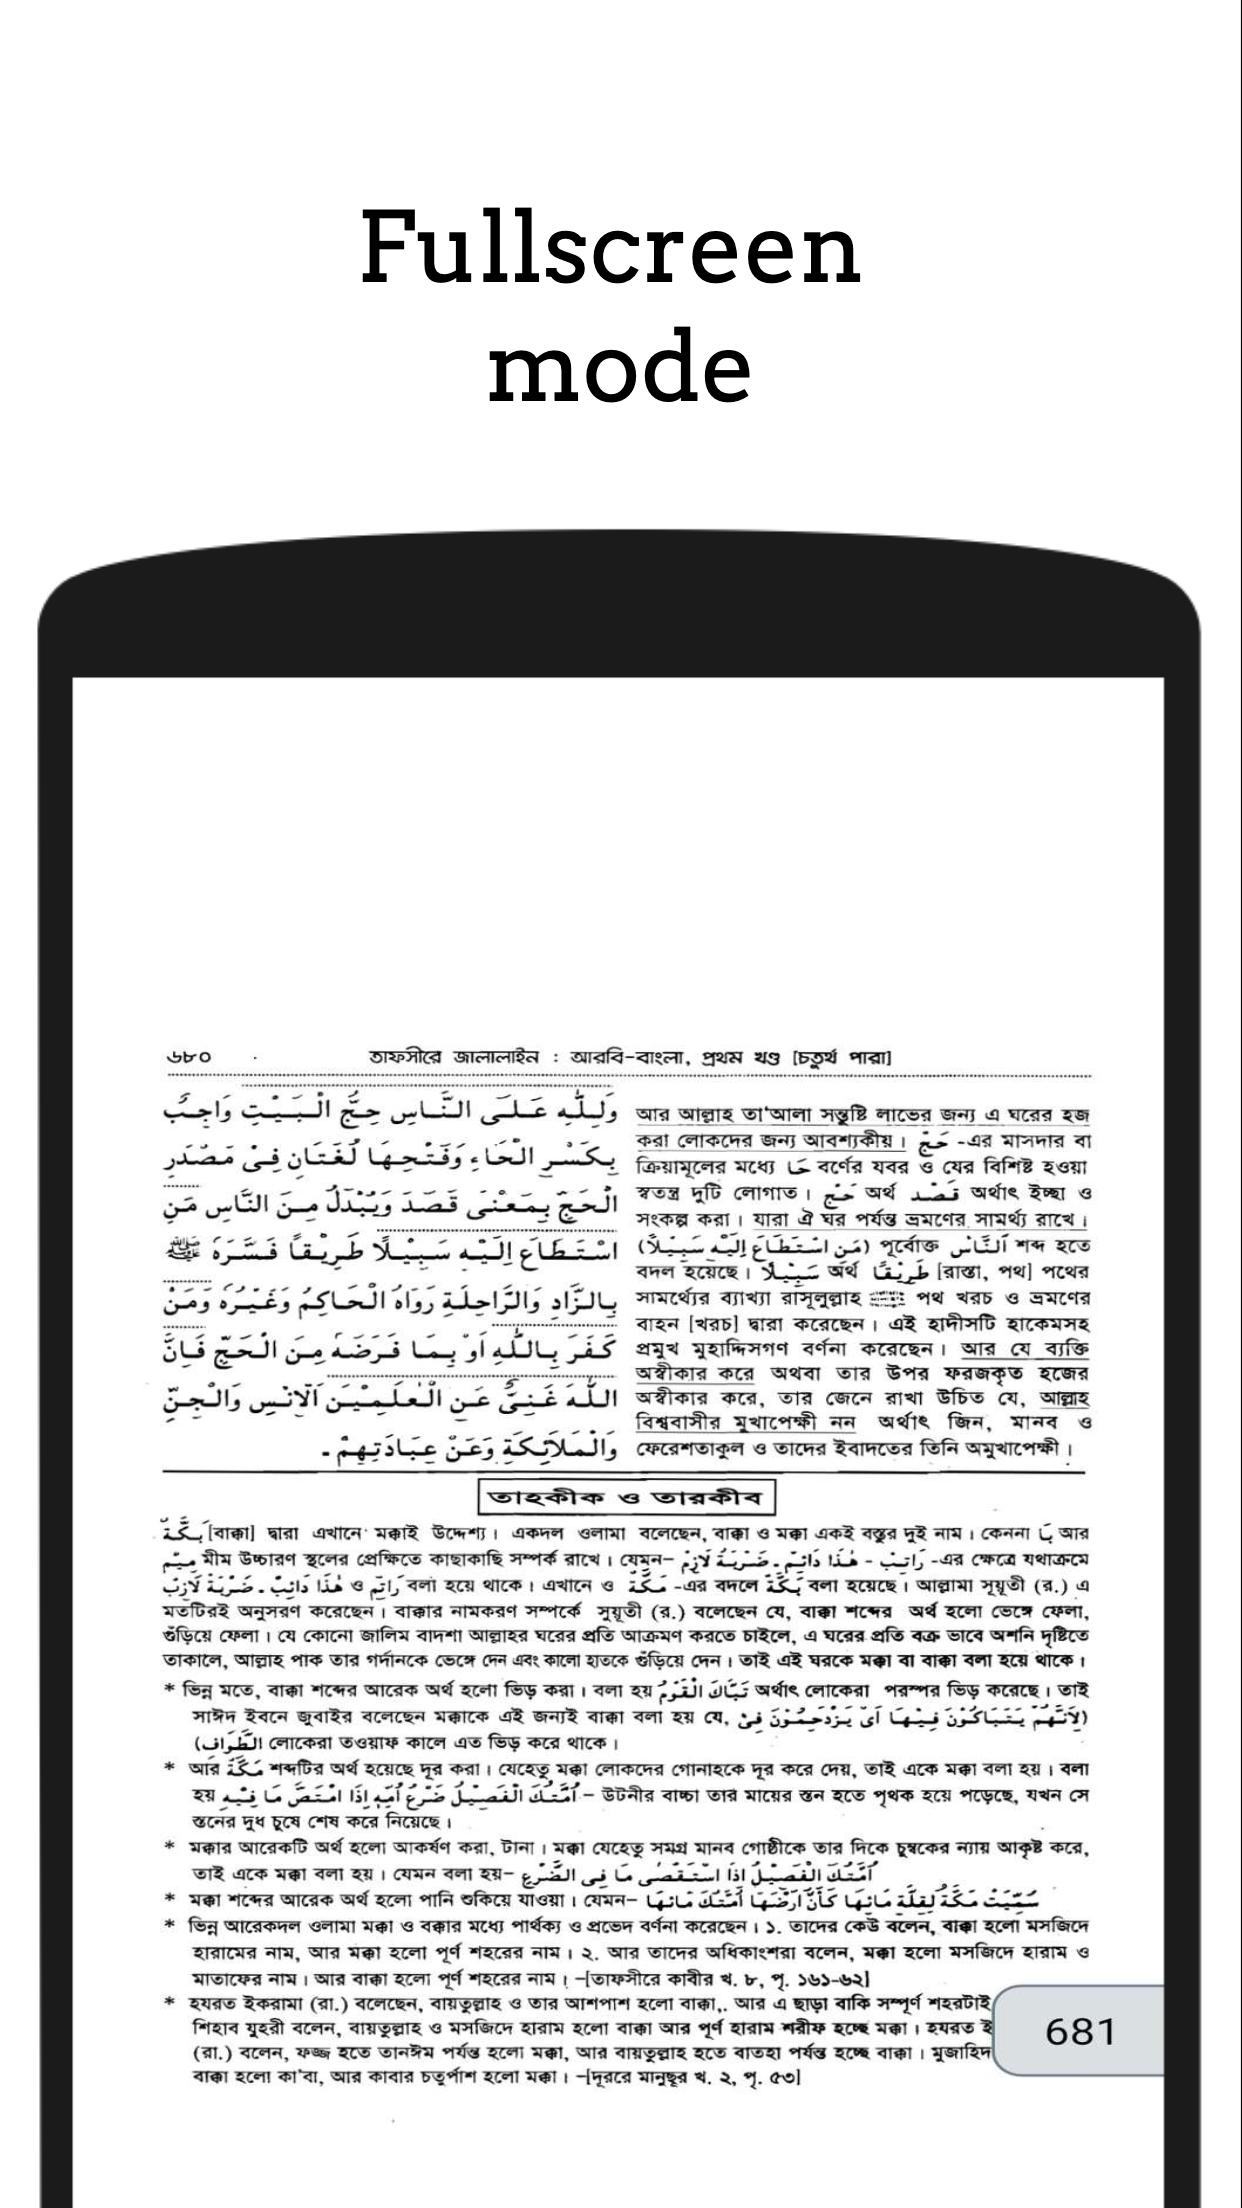 তাফসিরে জালালাইন - Tafsir Jalalaine 1.2 Screenshot 20